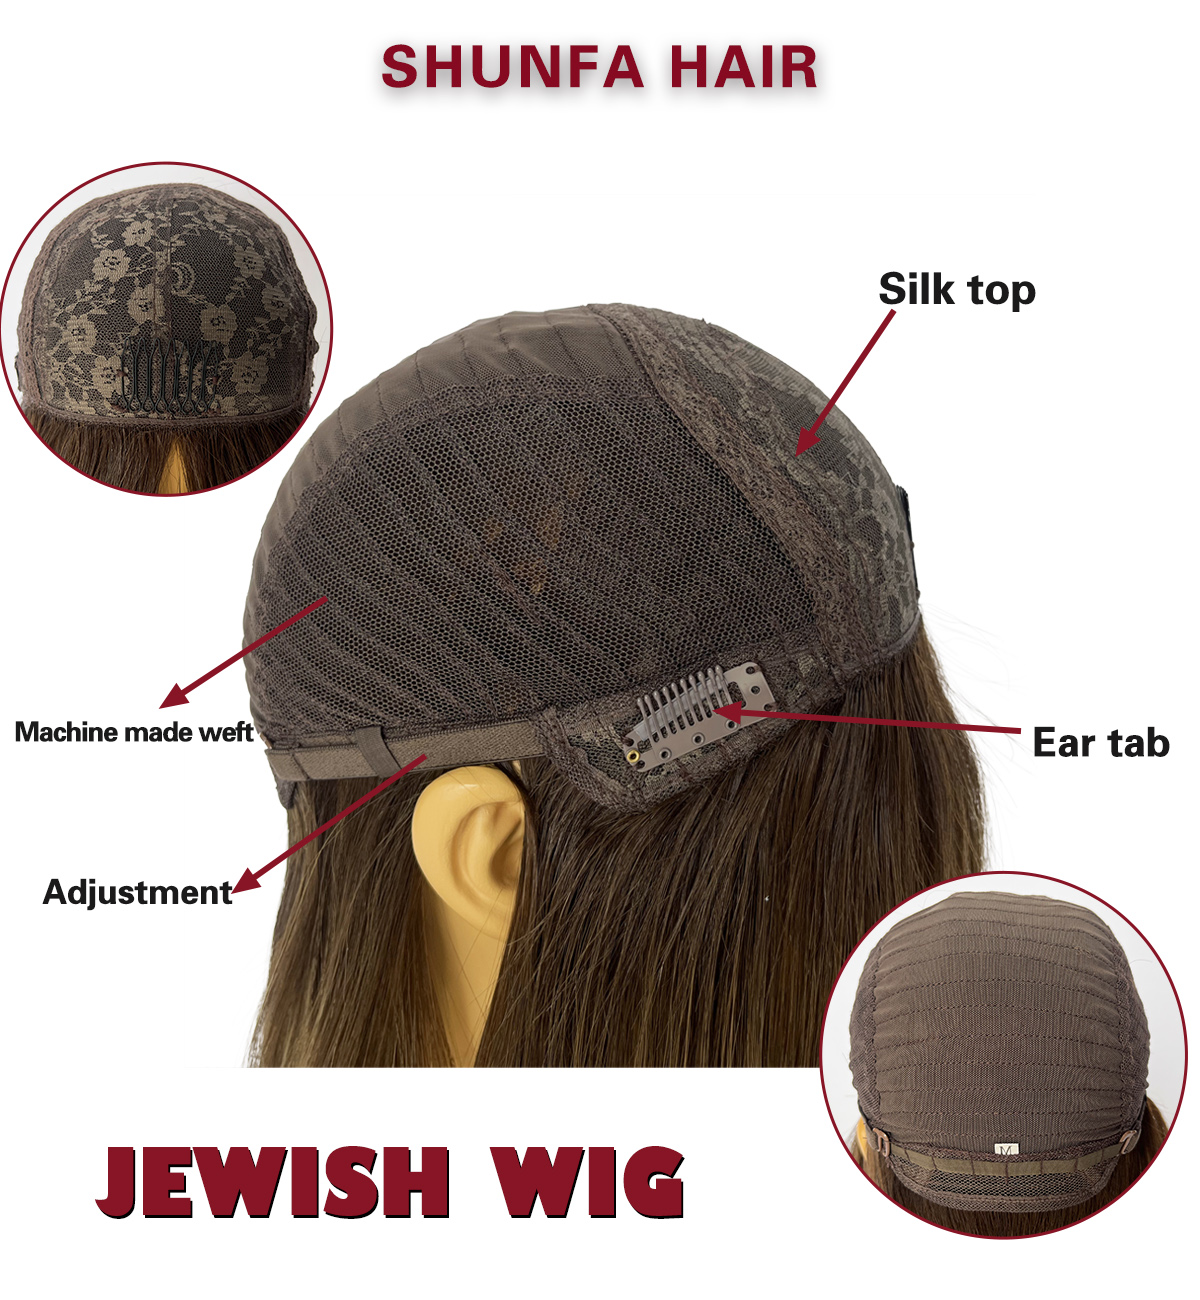 shunfa hair jewish wig.png